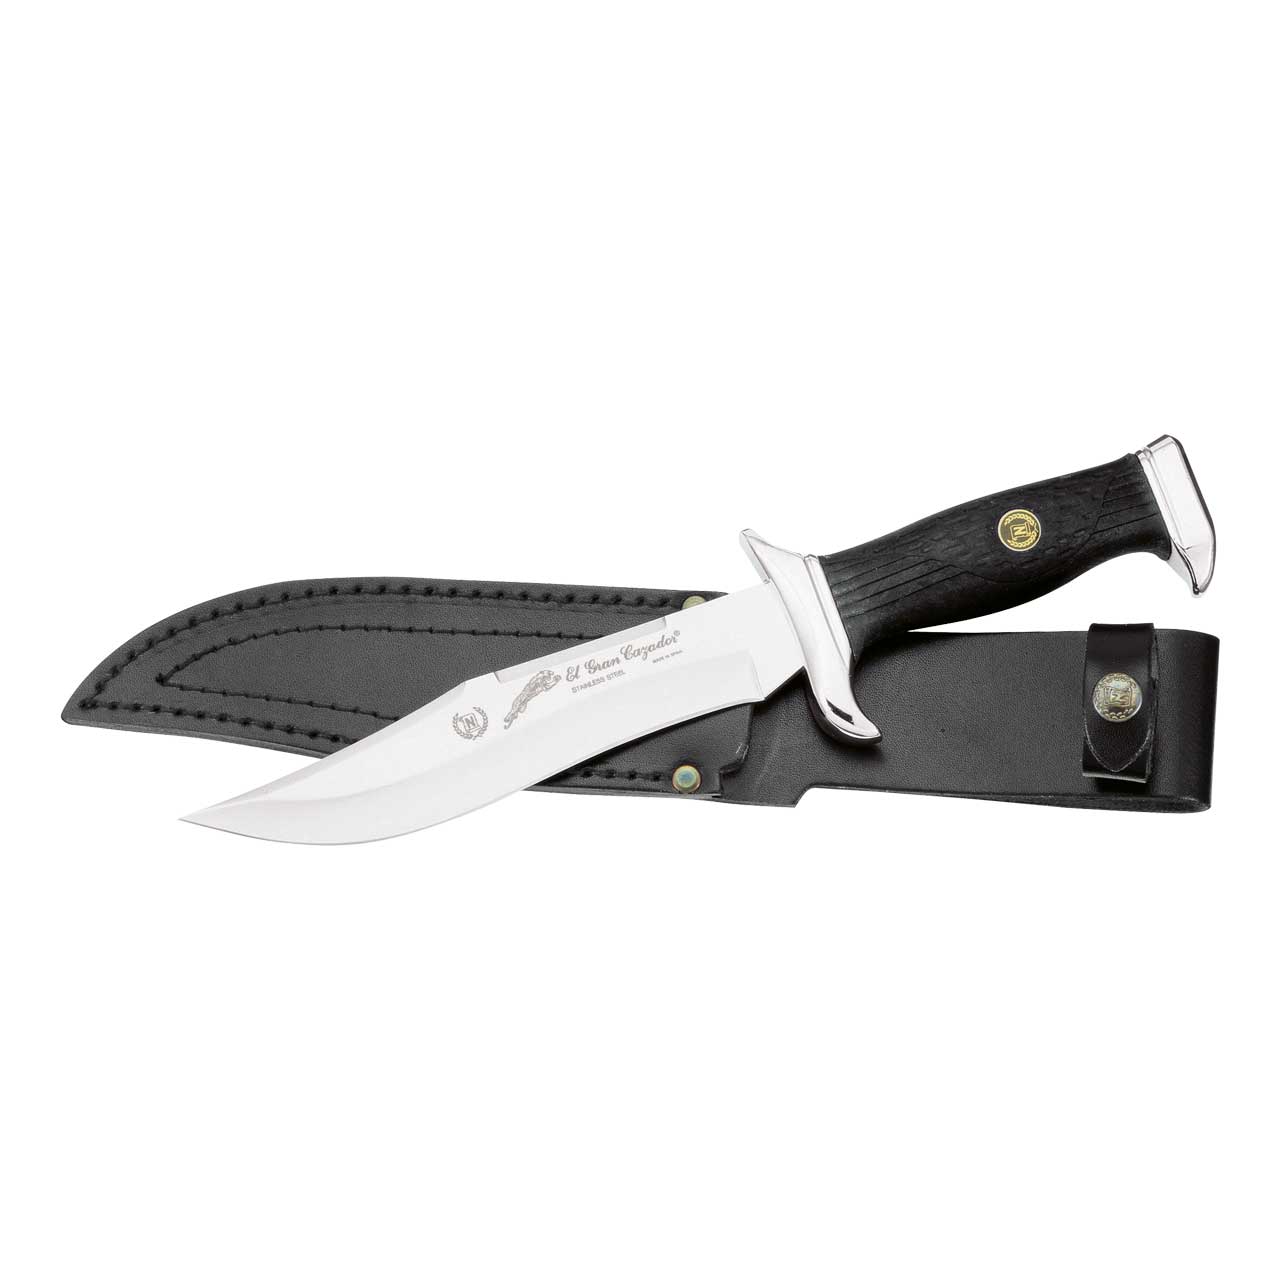 Nieto Bowie-Messer, Klinge 18 cm, Elastomer, verchromte Beschläge, Lederscheide